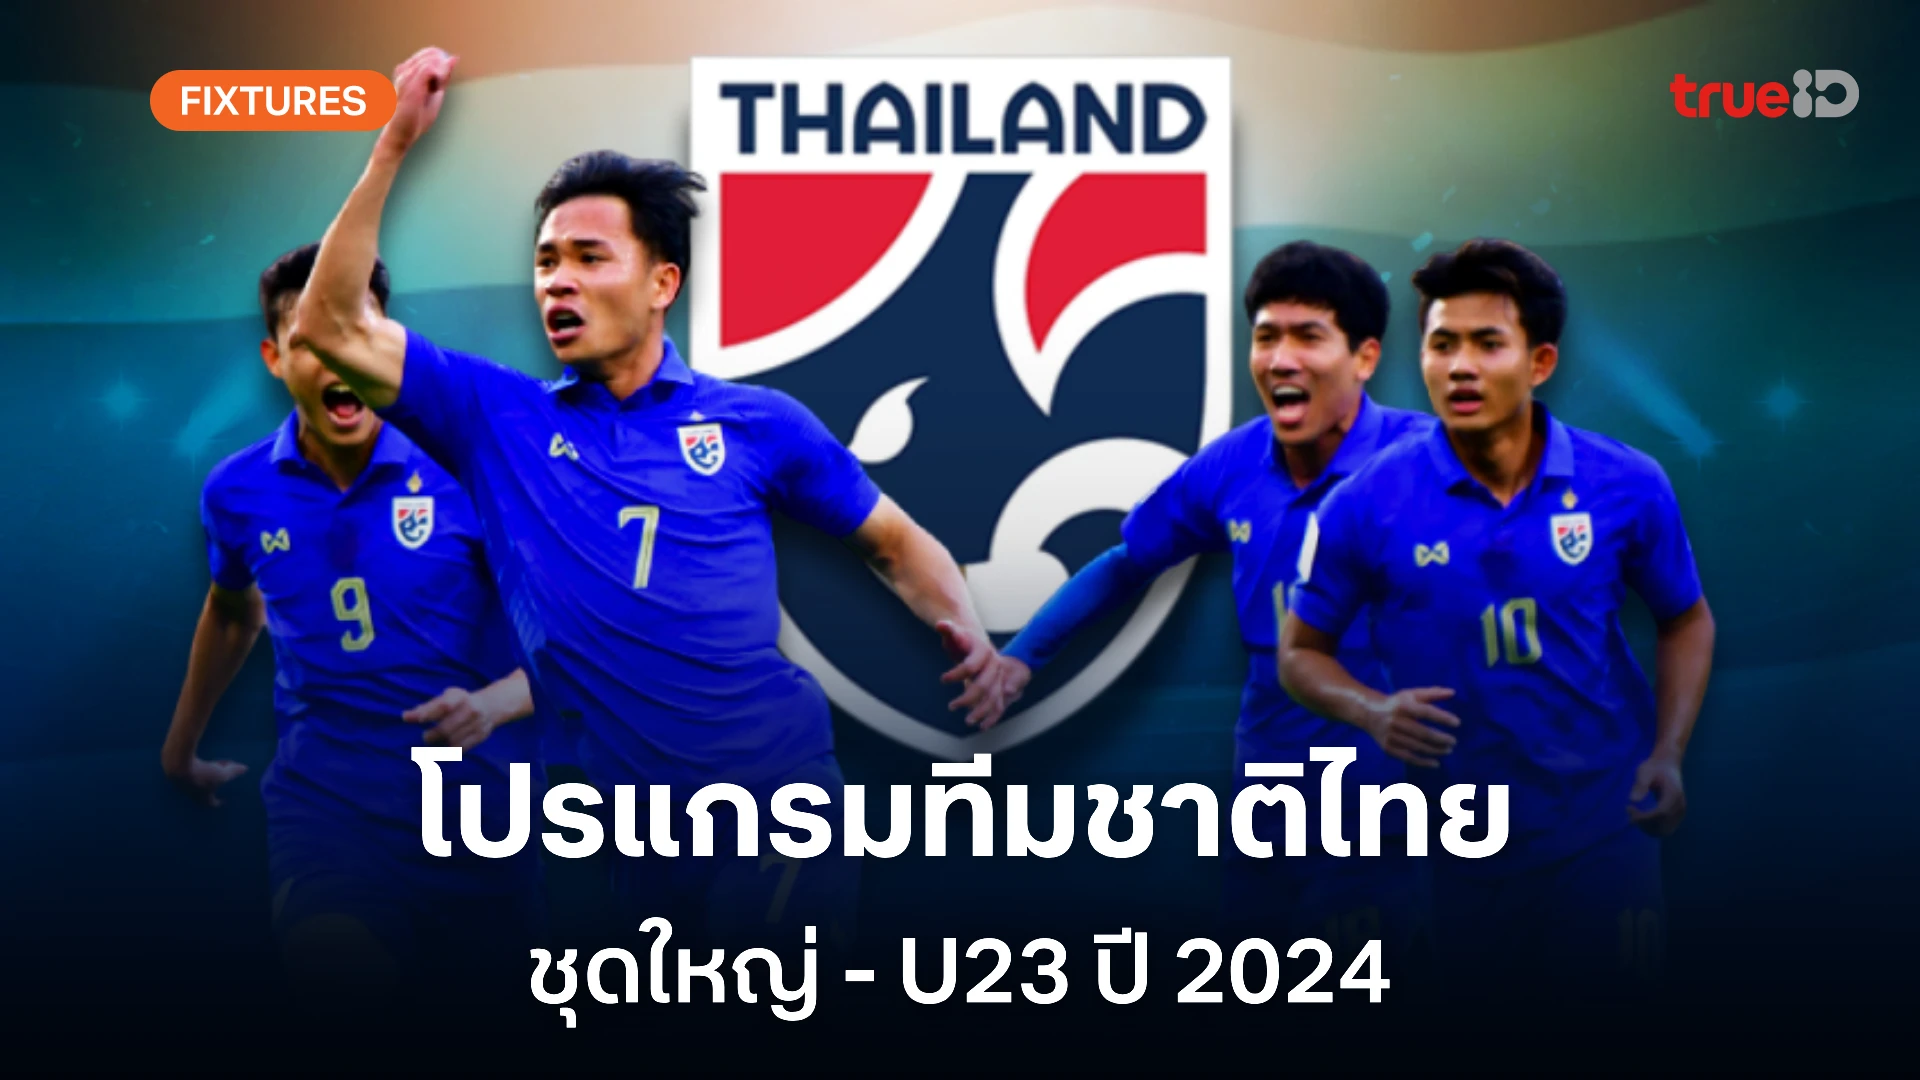 ผลบอลและโปรแกรมฟุตบอล ทีมชาติไทย ชุดใหญ่-U23 ตลอดปี 2024 (ช่องดูสด)